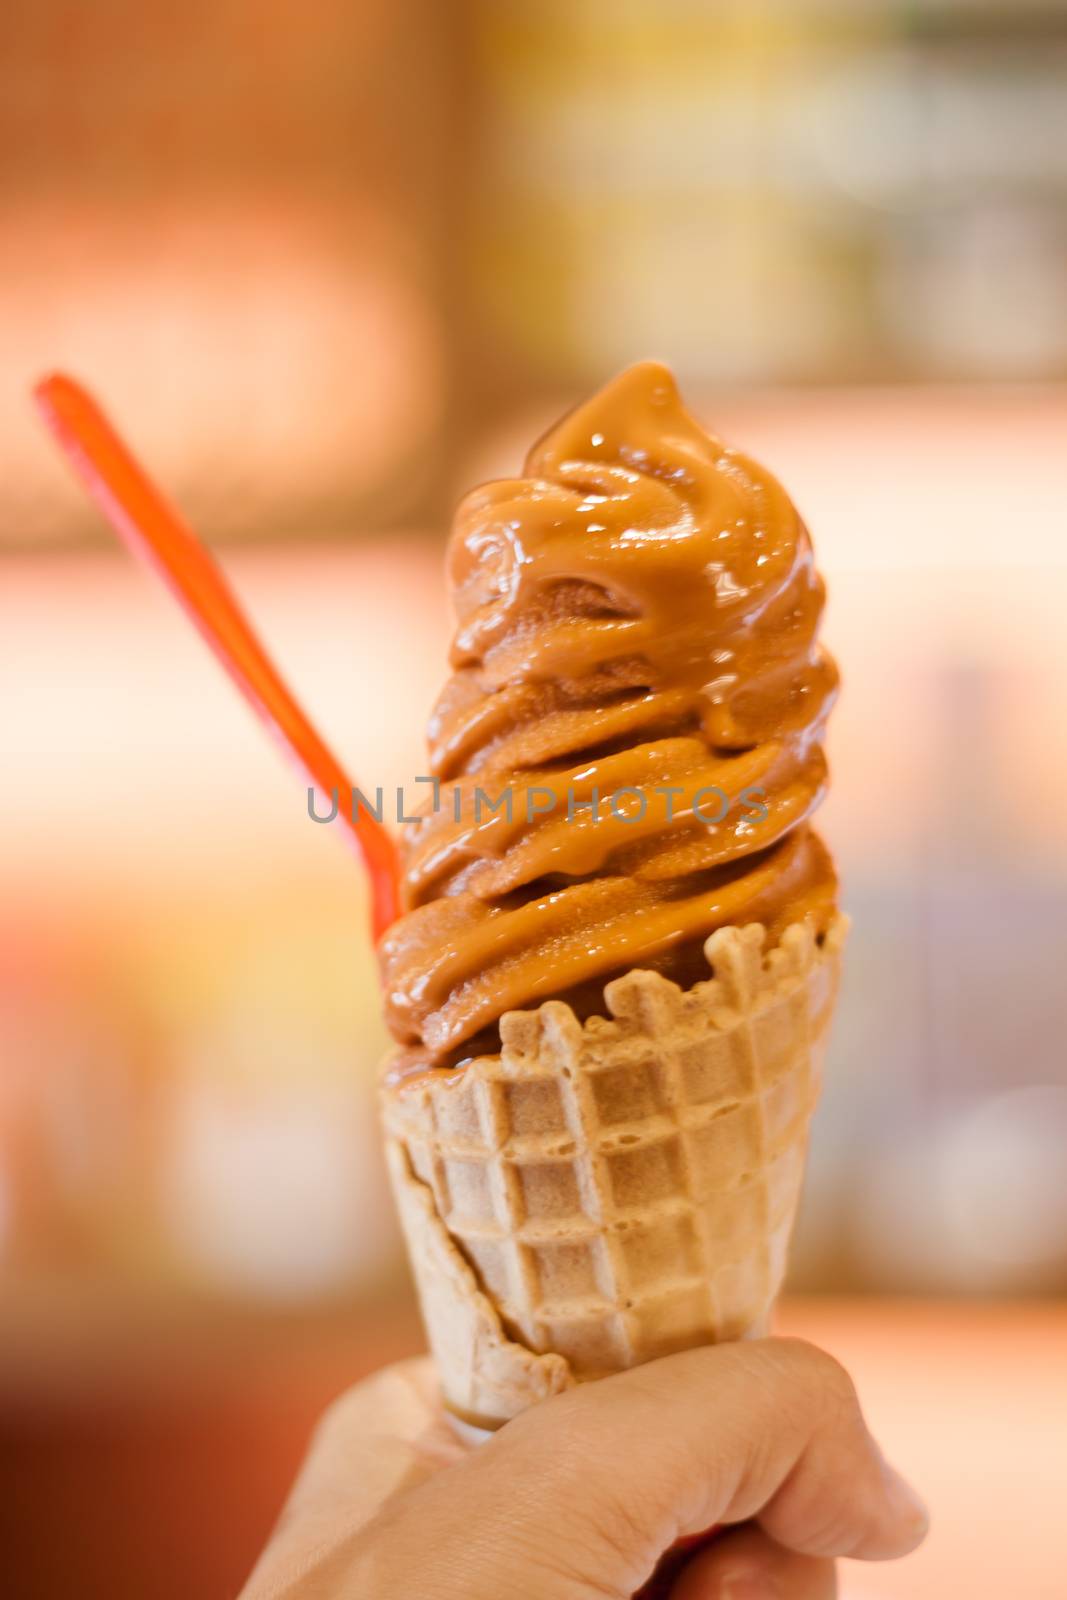 Ice cream cone on hand, stock photo